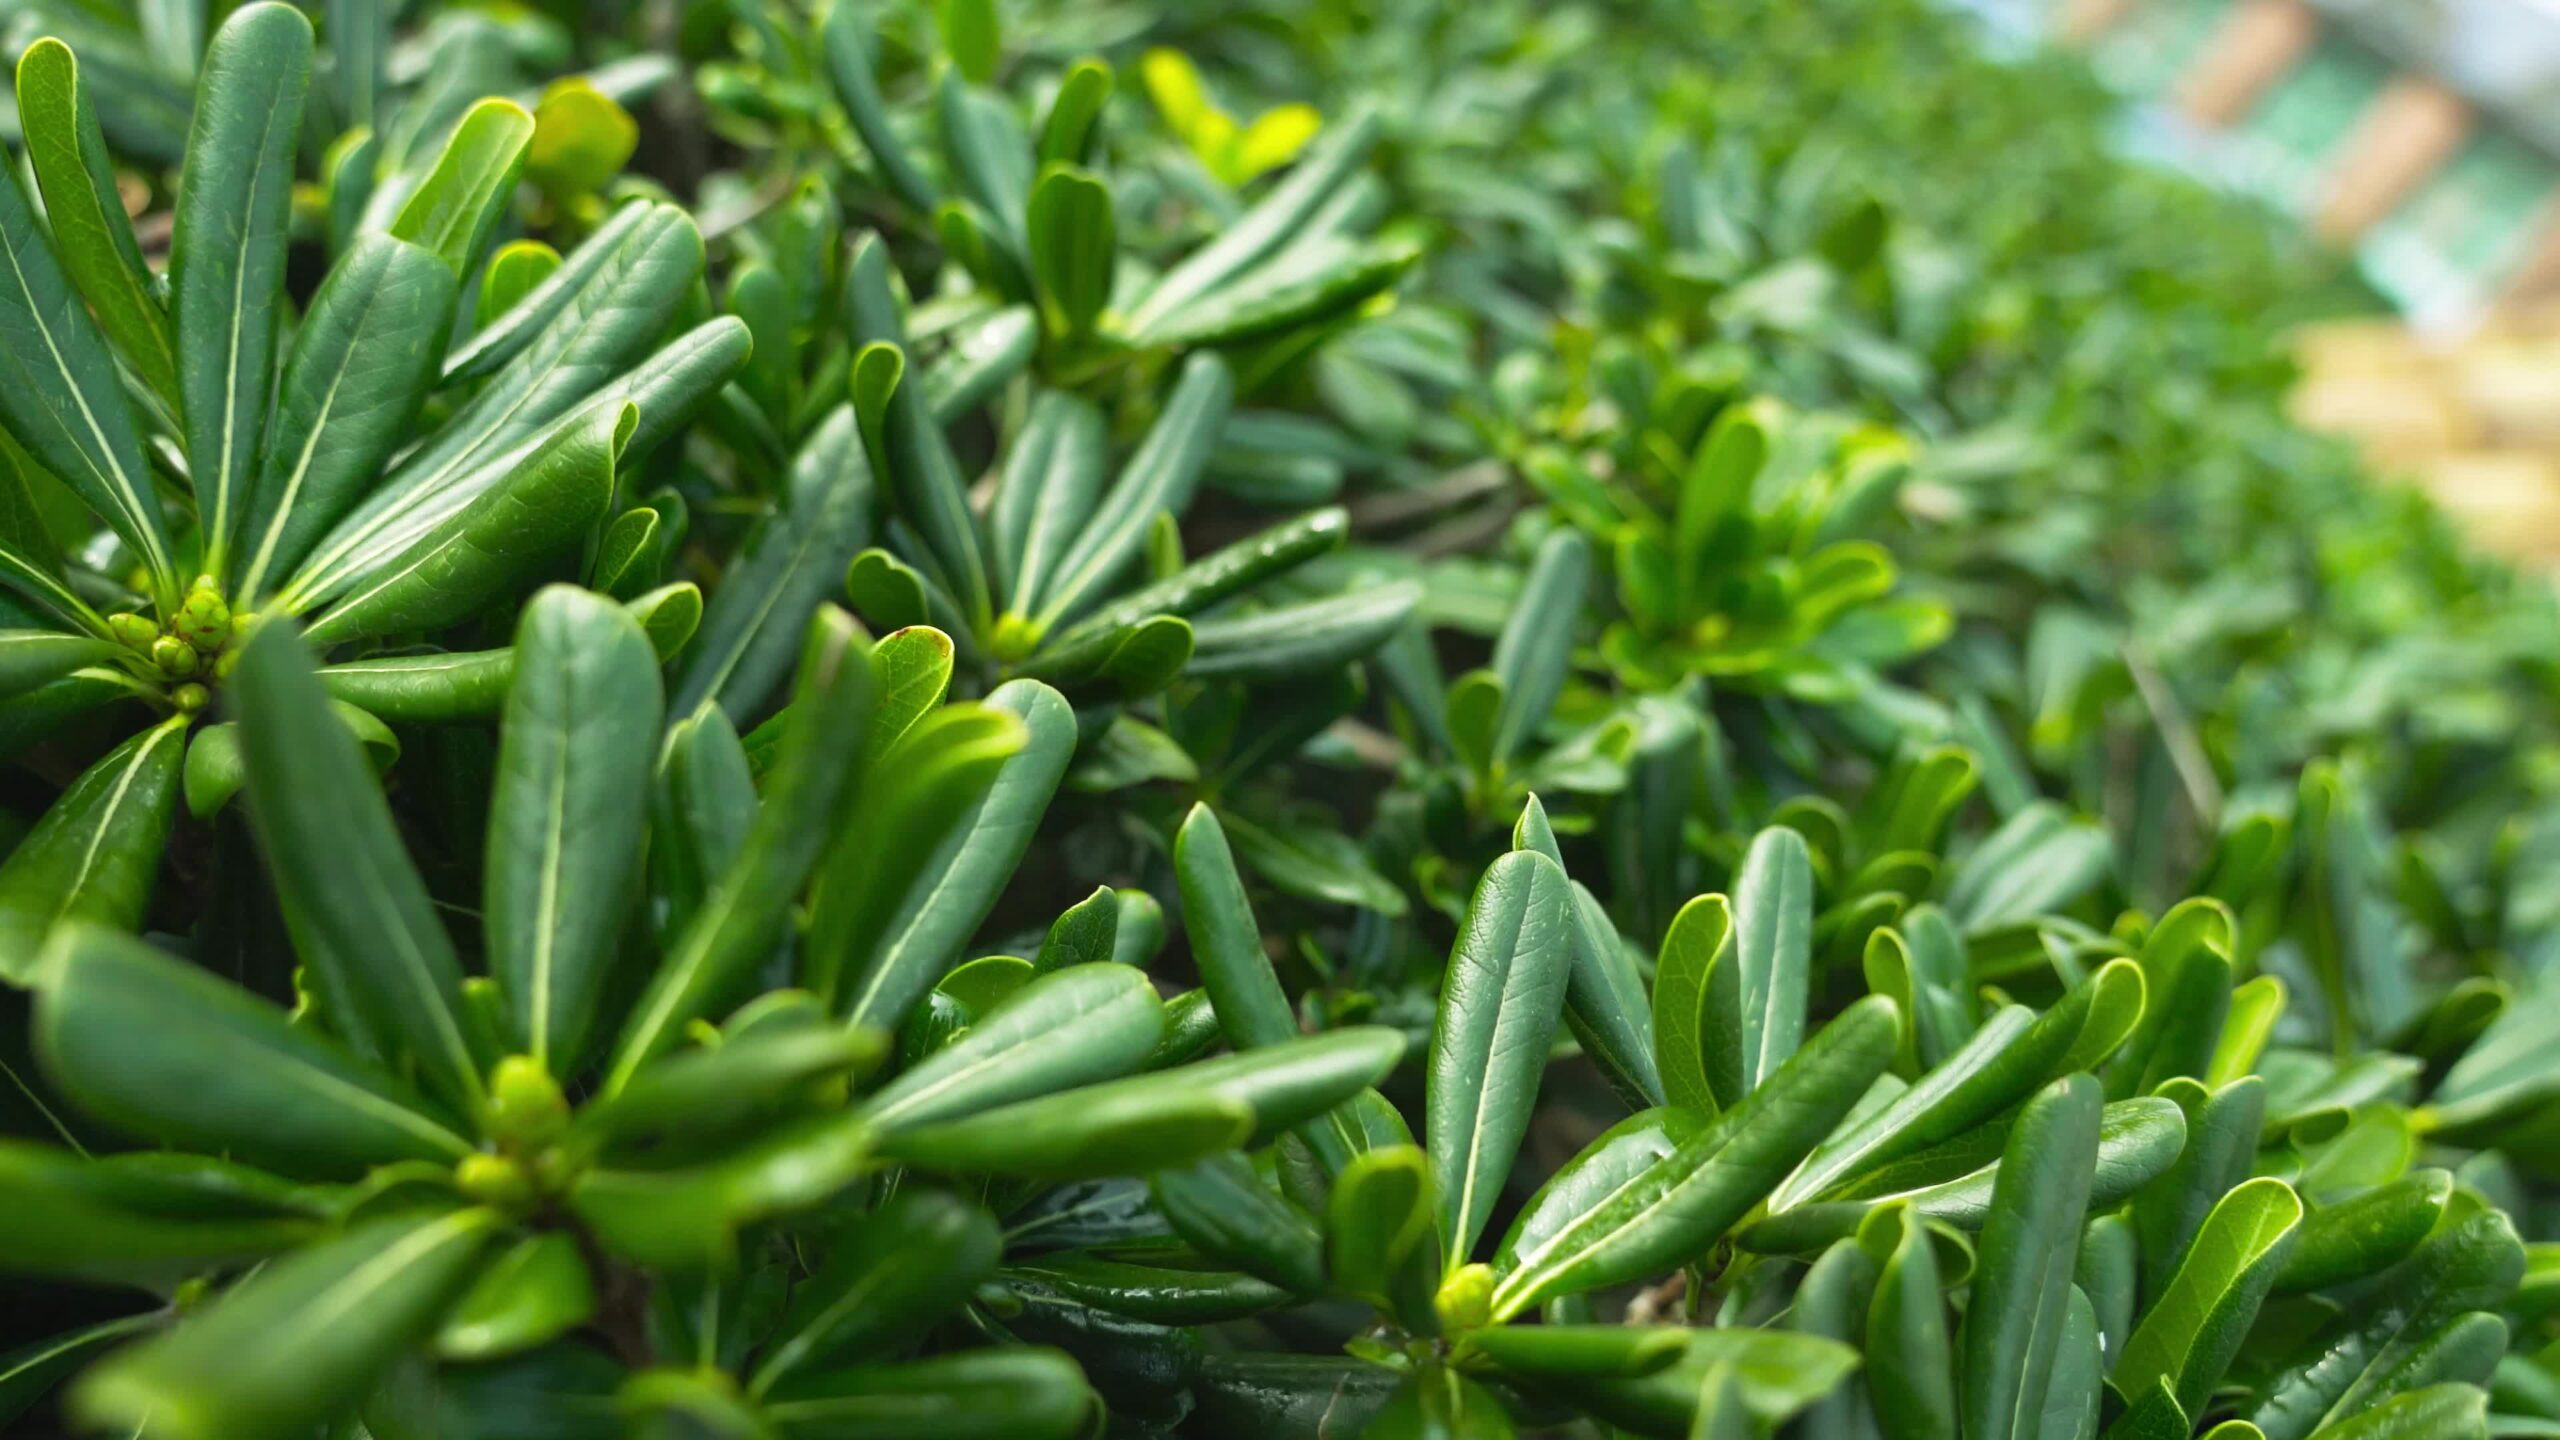 Succose piante Pigmyweeds verdi della famiglia Crassula ovata